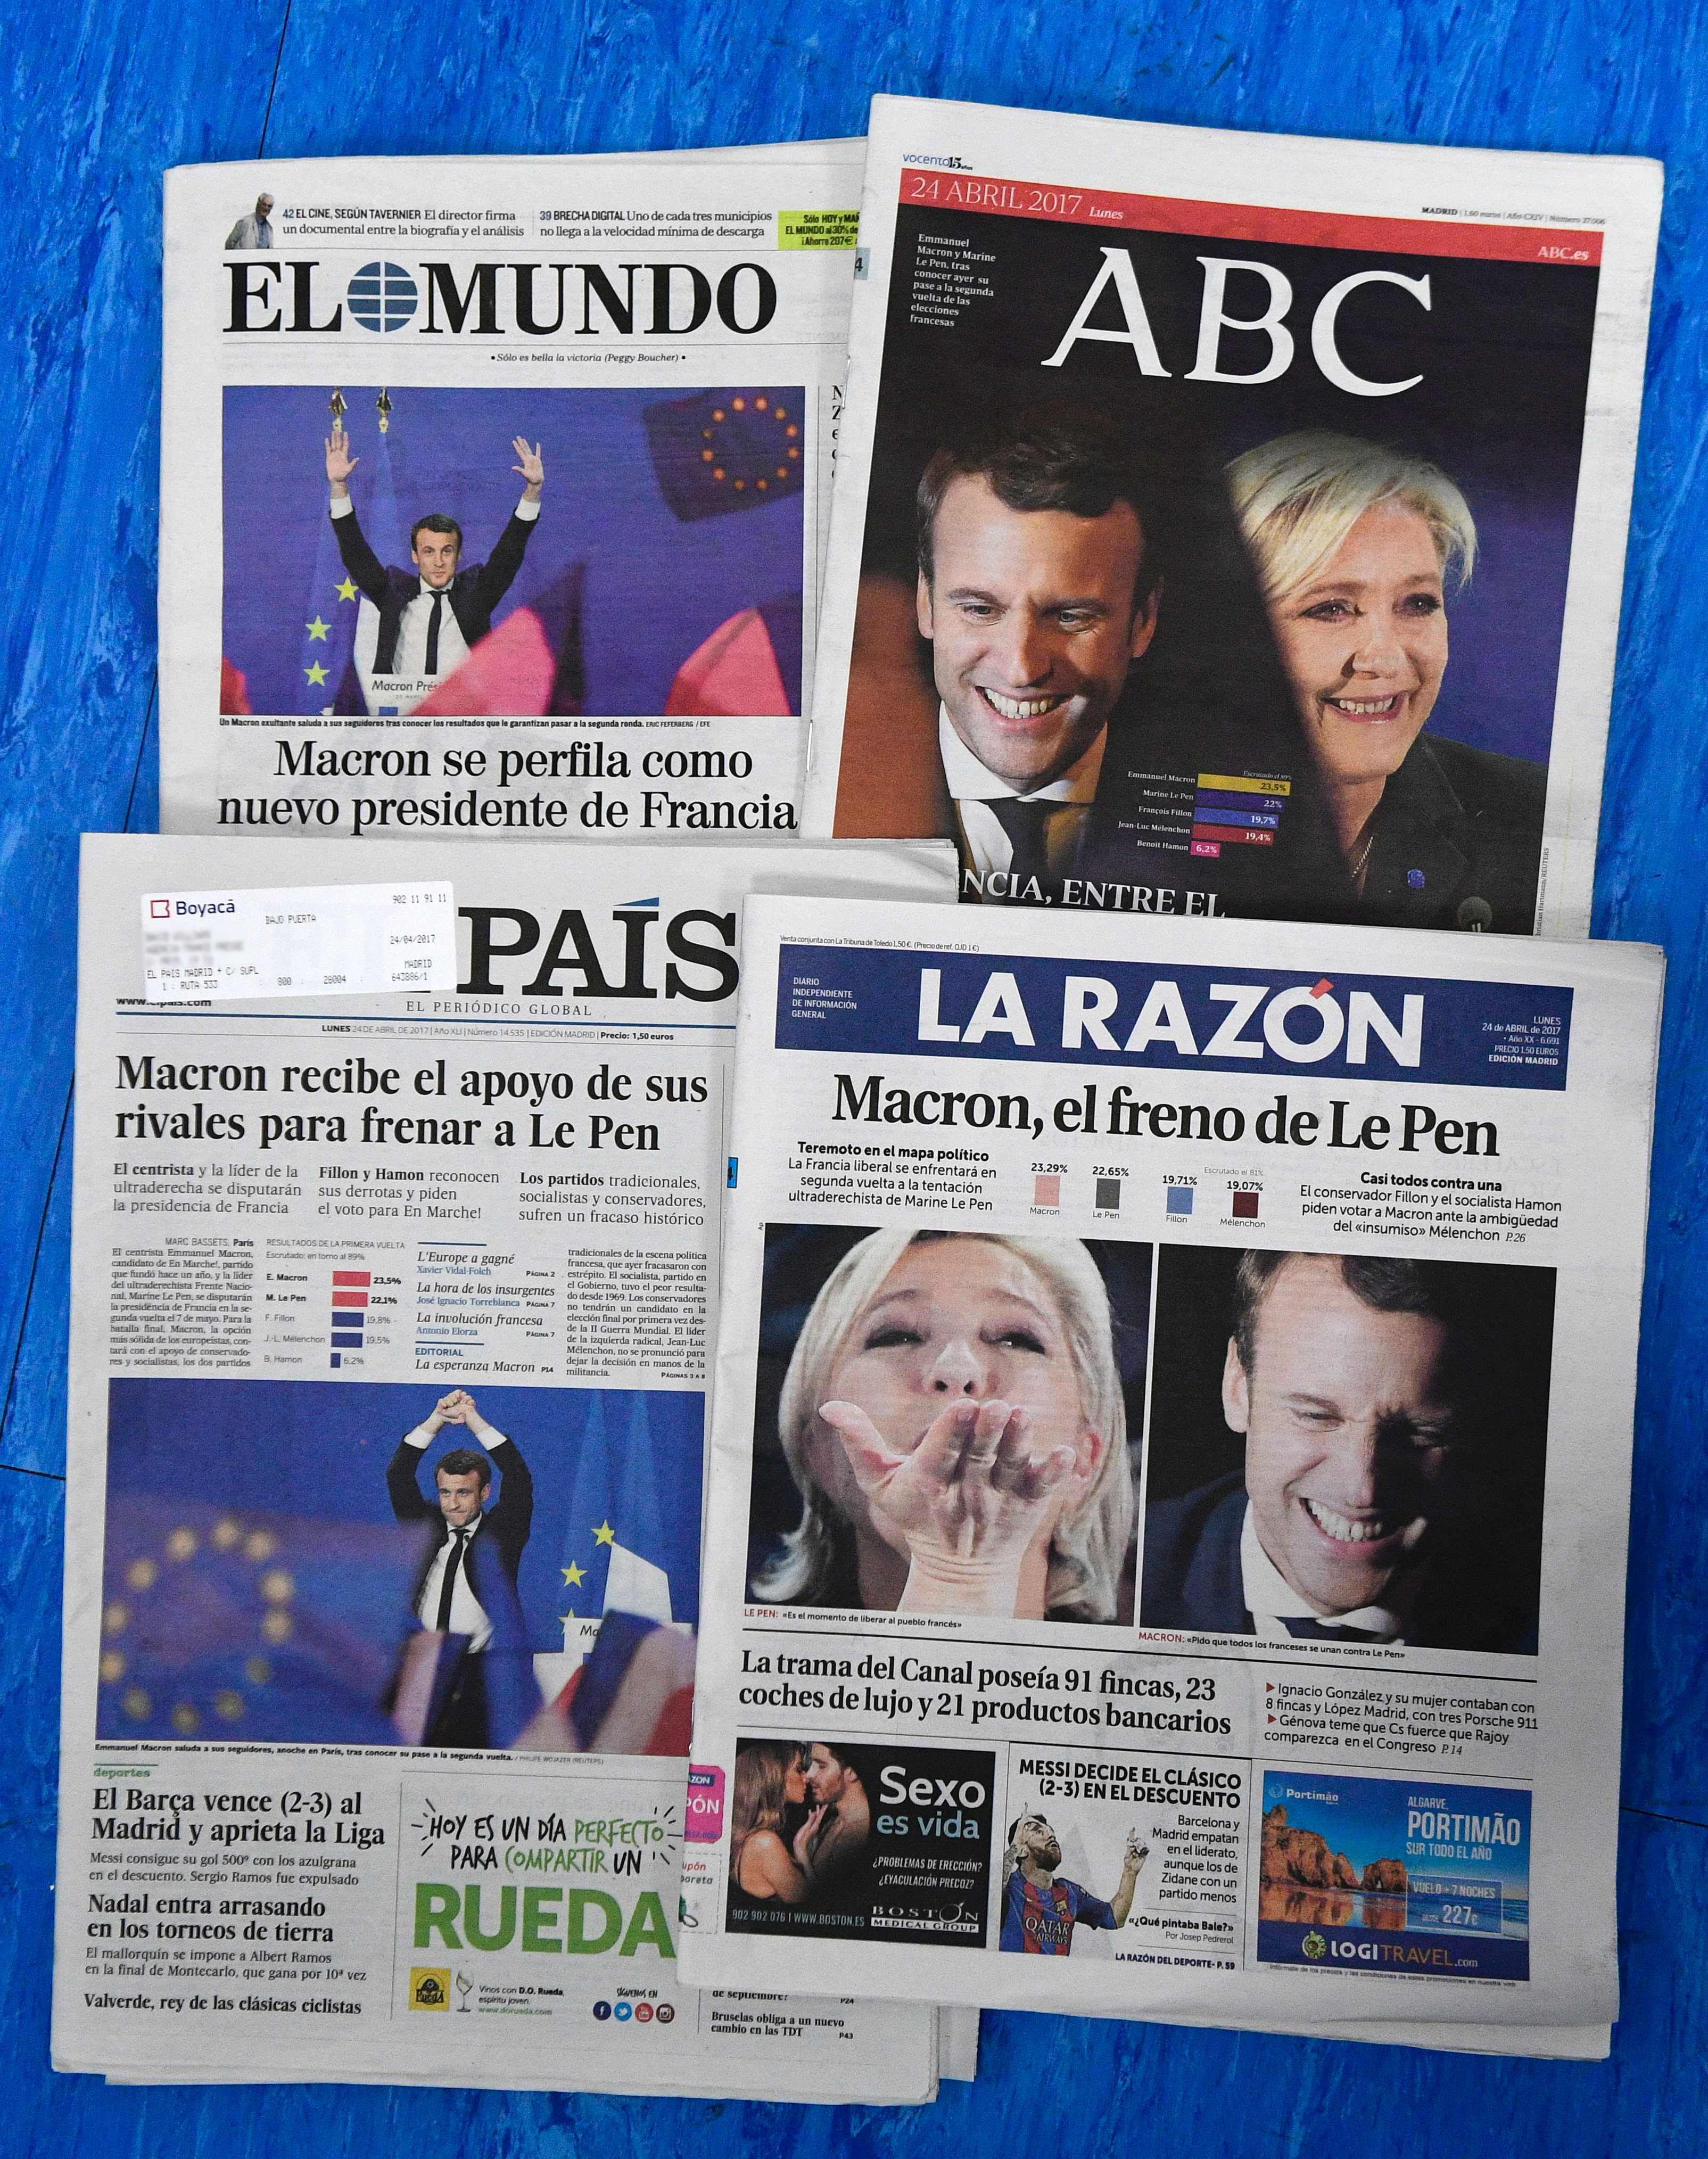 أخبار ماكرون ولوبان فى تتصدر الصحف الإسبانية